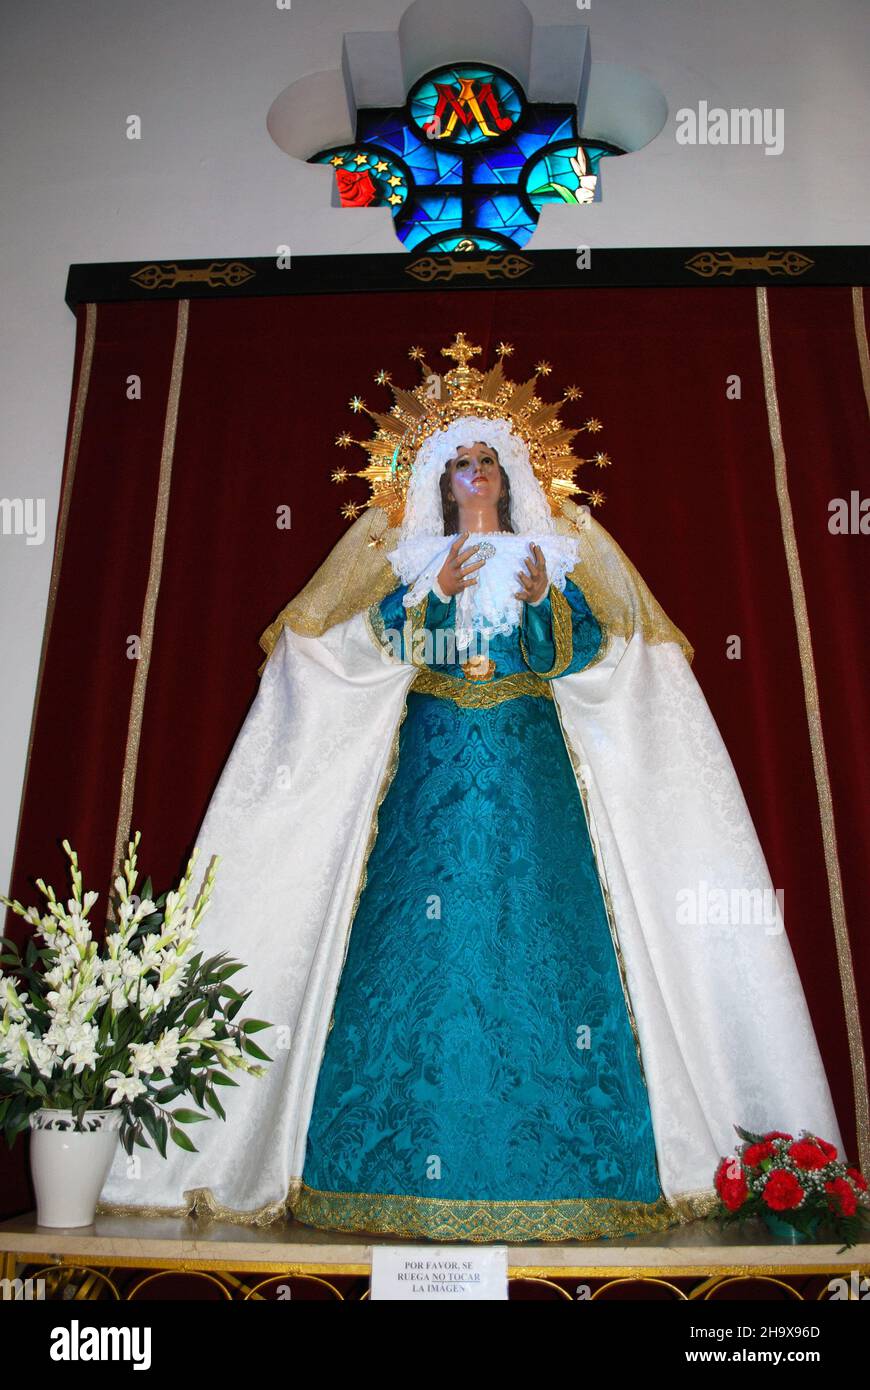 Religious statue inside El Rosario church, Fuengirola, Spain. Stock Photo